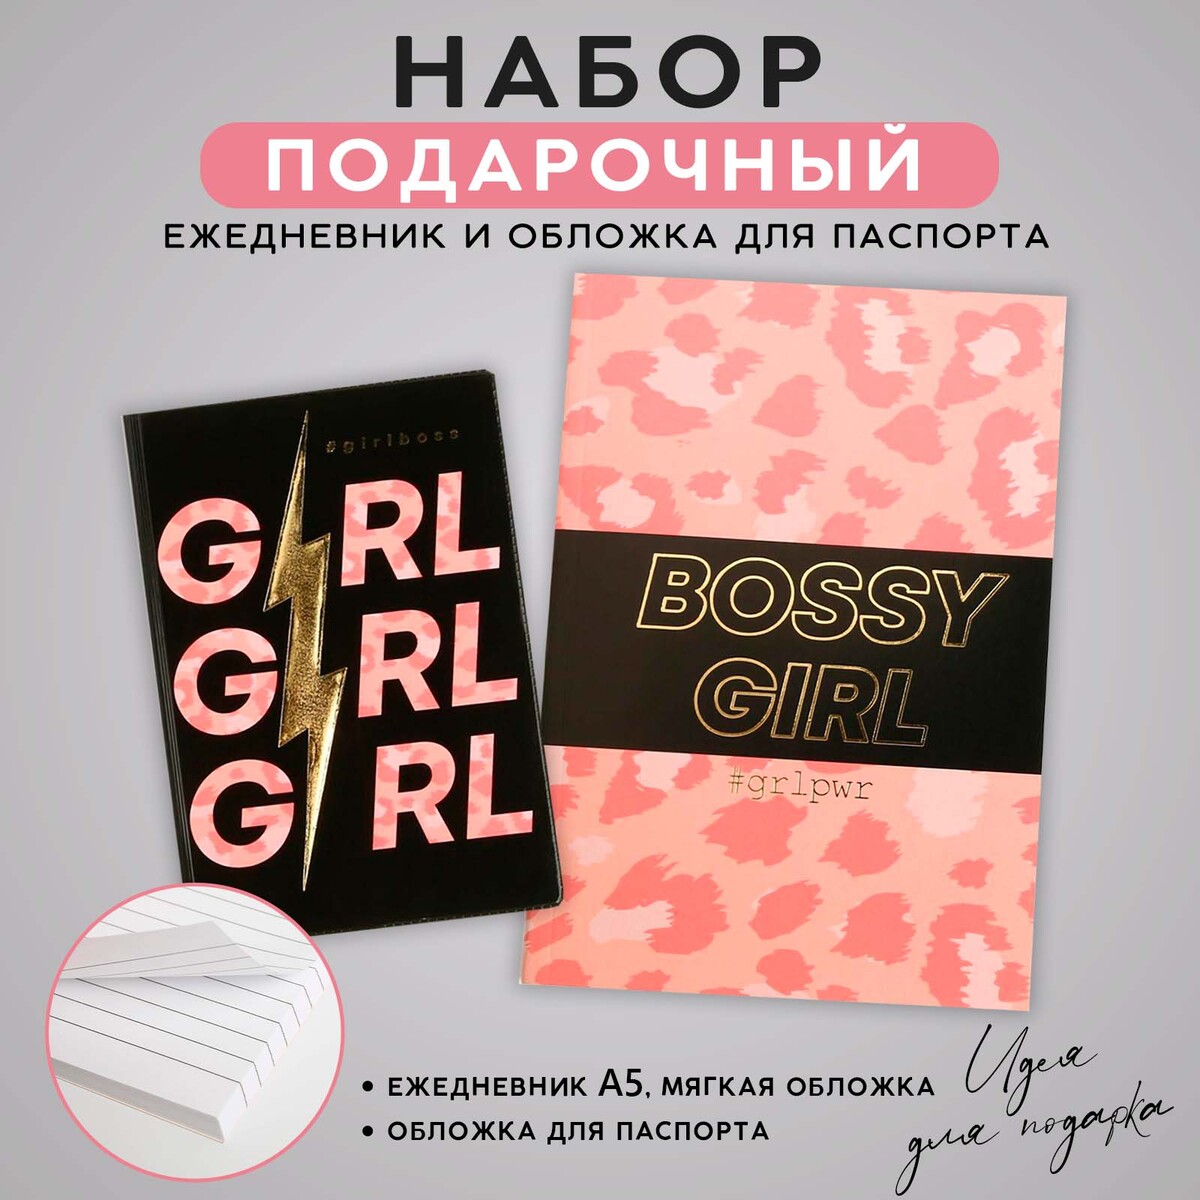 Набор обложка для паспорта и ежедневник #girl the burning girl